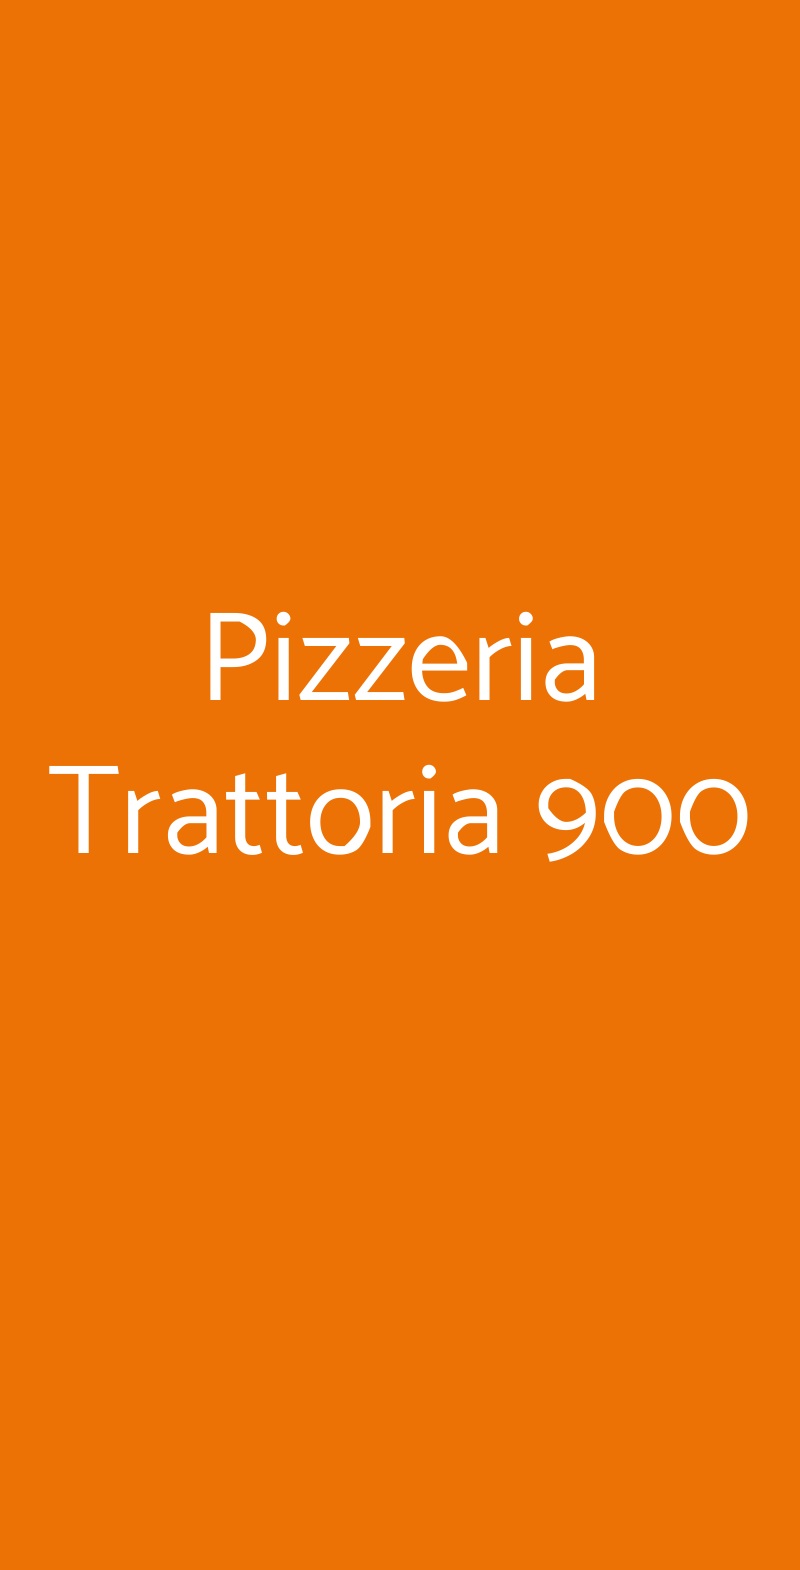 Pizzeria Trattoria 900 Napoli menù 1 pagina